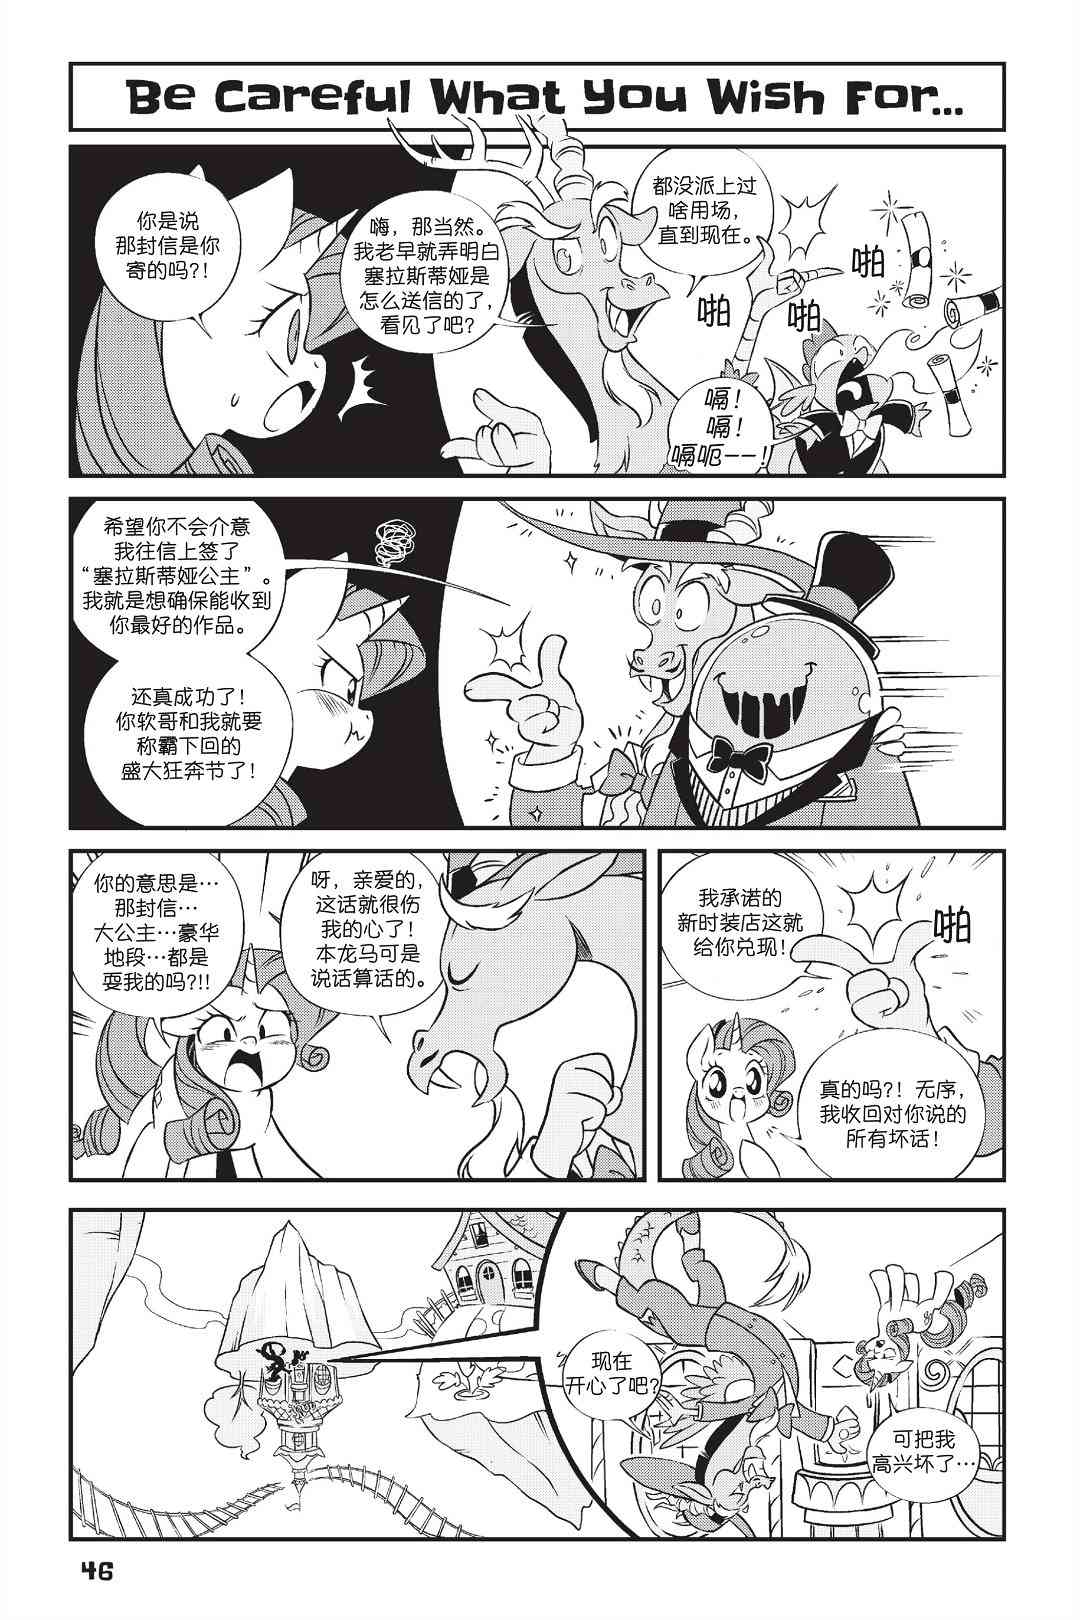 彩虹小馬G4：友情就是魔法 - 新日版漫畫第01部第03話 - 1